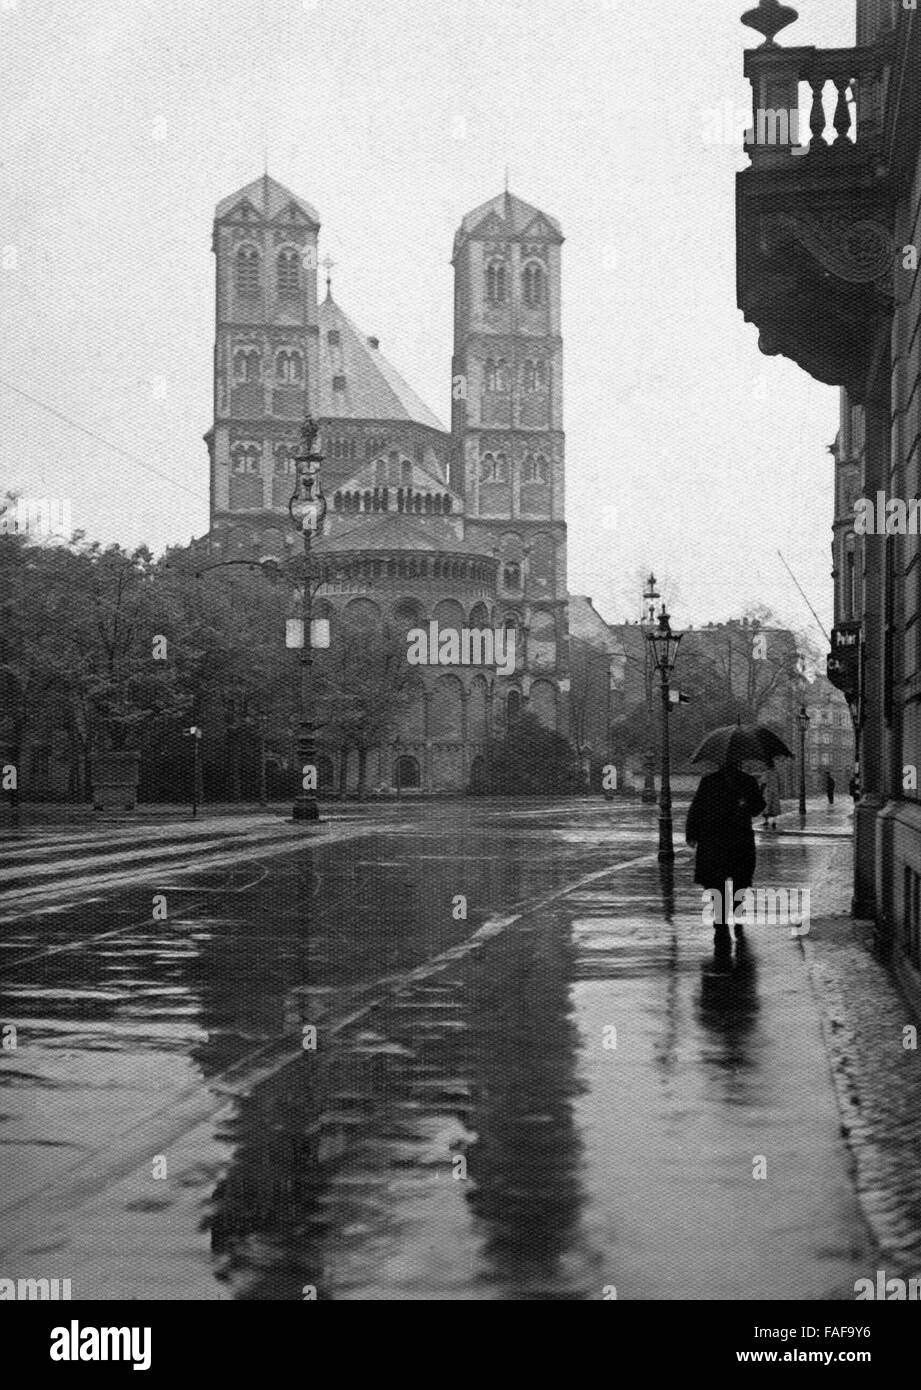 Ein Mann spaziert im Regen vor der Kirche St. Gereon in der Innenstadt von Köln, Deutschland 1920er Jahre. A man walking in the rain in front of St. Gereon's church at the inner city of Cologne, Germany 1920s. Stock Photo